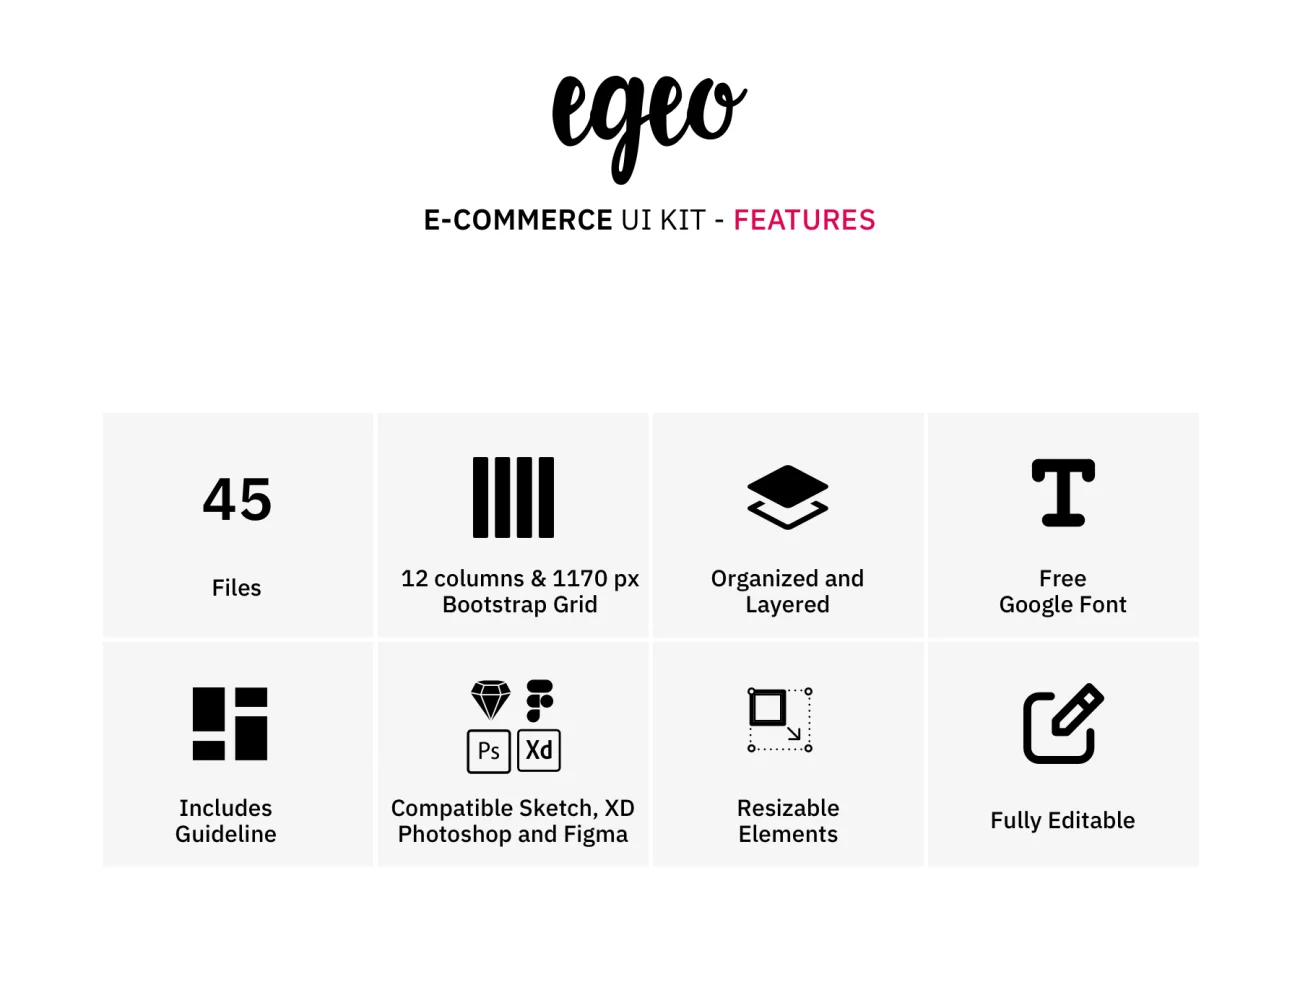 EGEO E-Commerce UI Kit 潮流服饰包包配件电子商务用户界面套件-ui套件、主页、介绍、付款、列表、卡片式、引导页、支付、海报、登录页、着陆页、网购、表单、详情-到位啦UI